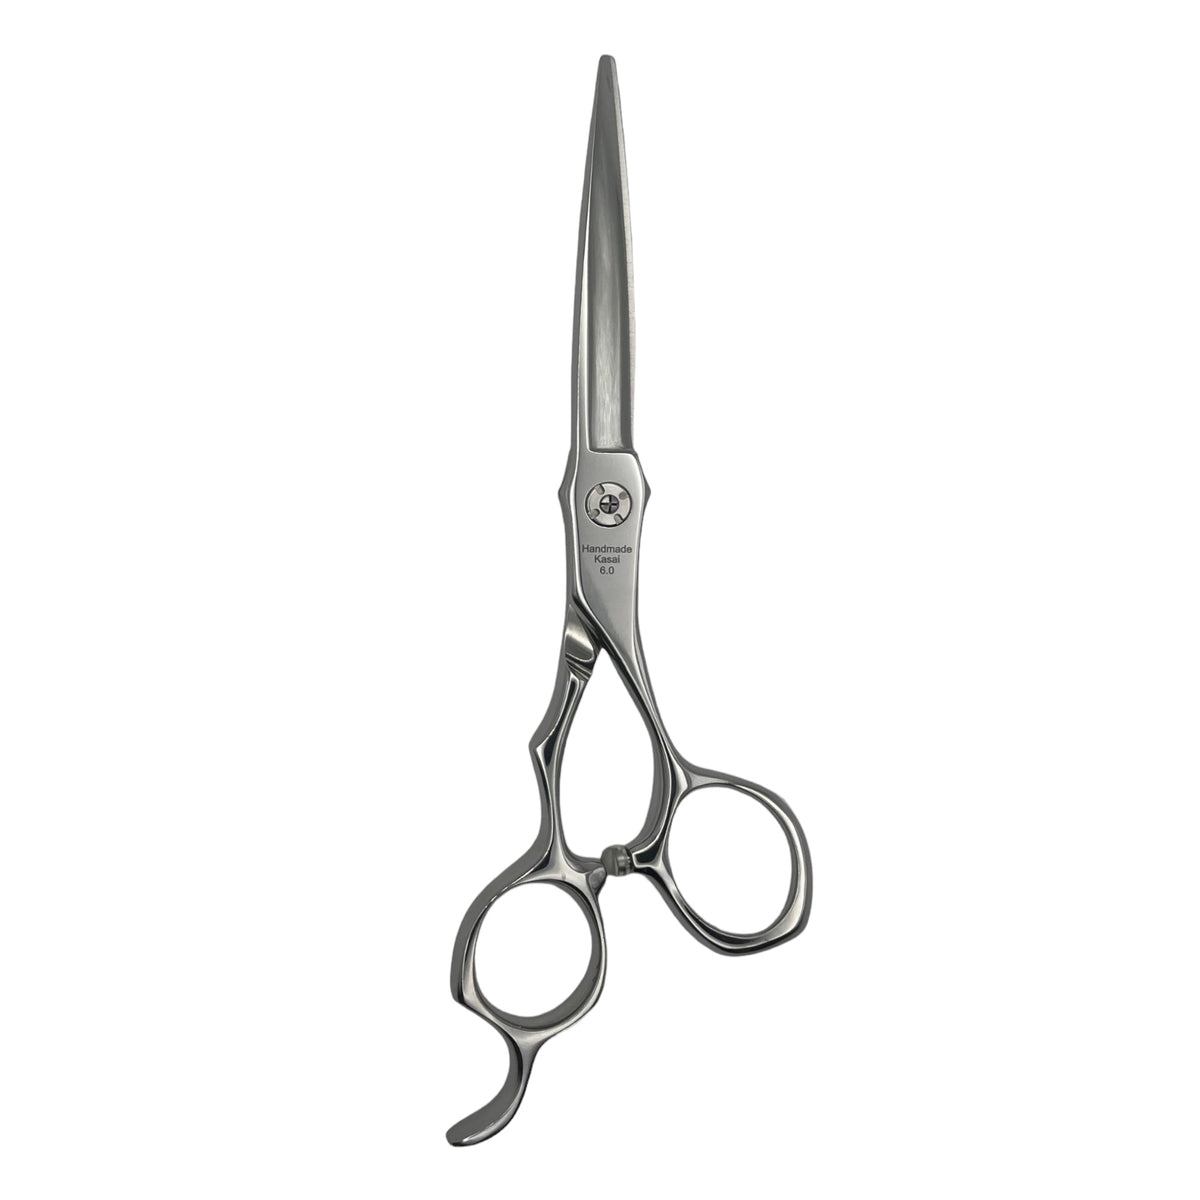 Kasai X hair cutting scissors back blade